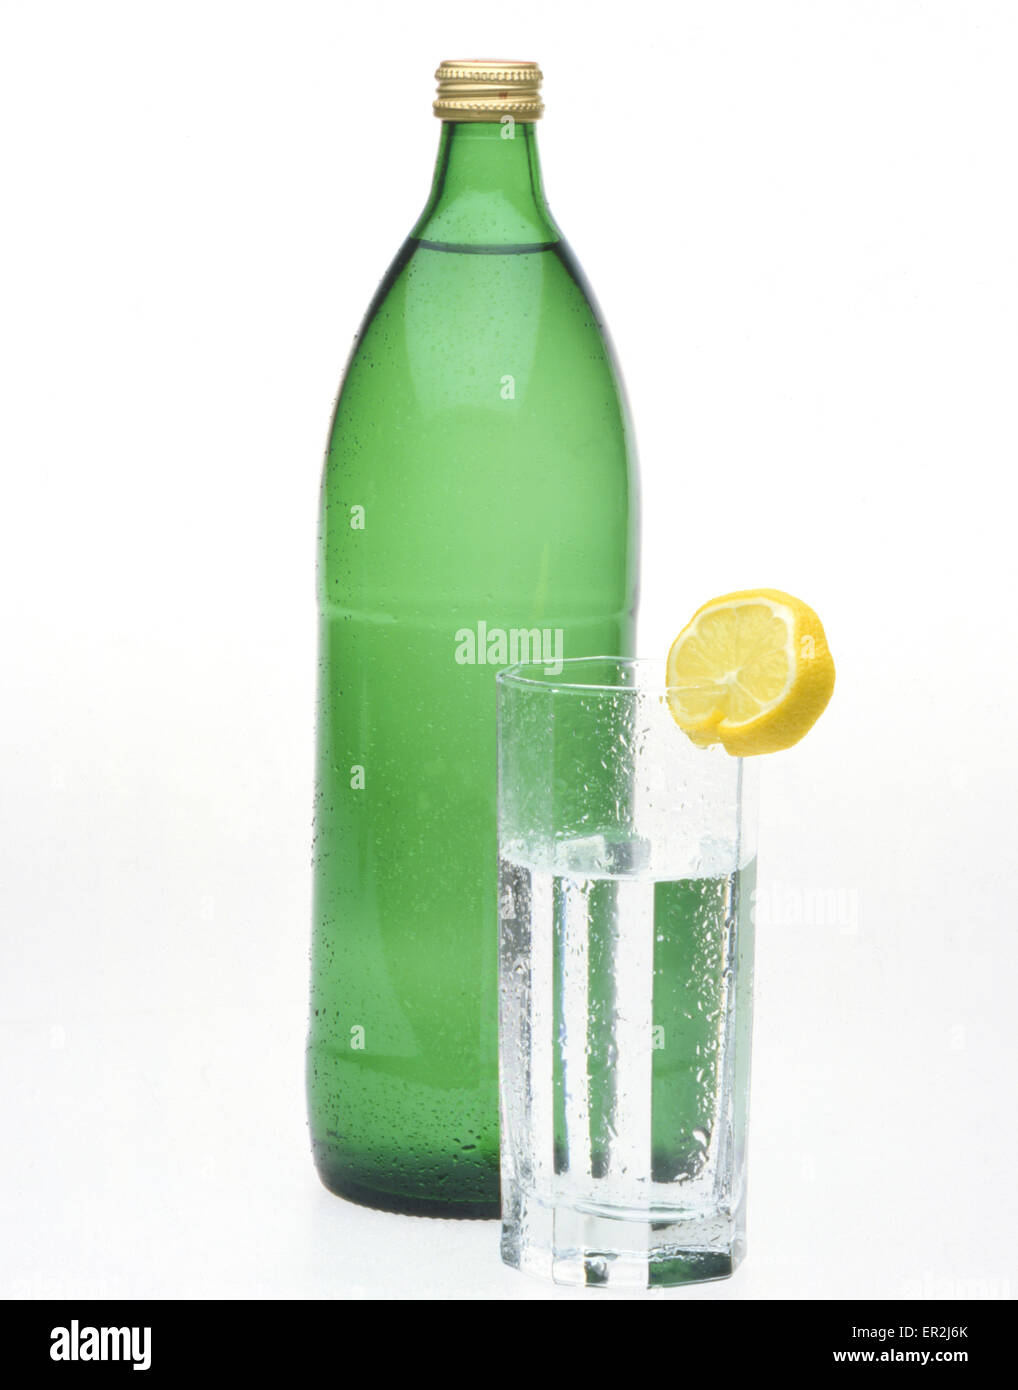 Mineralwasser in der Flasche Stock Photo